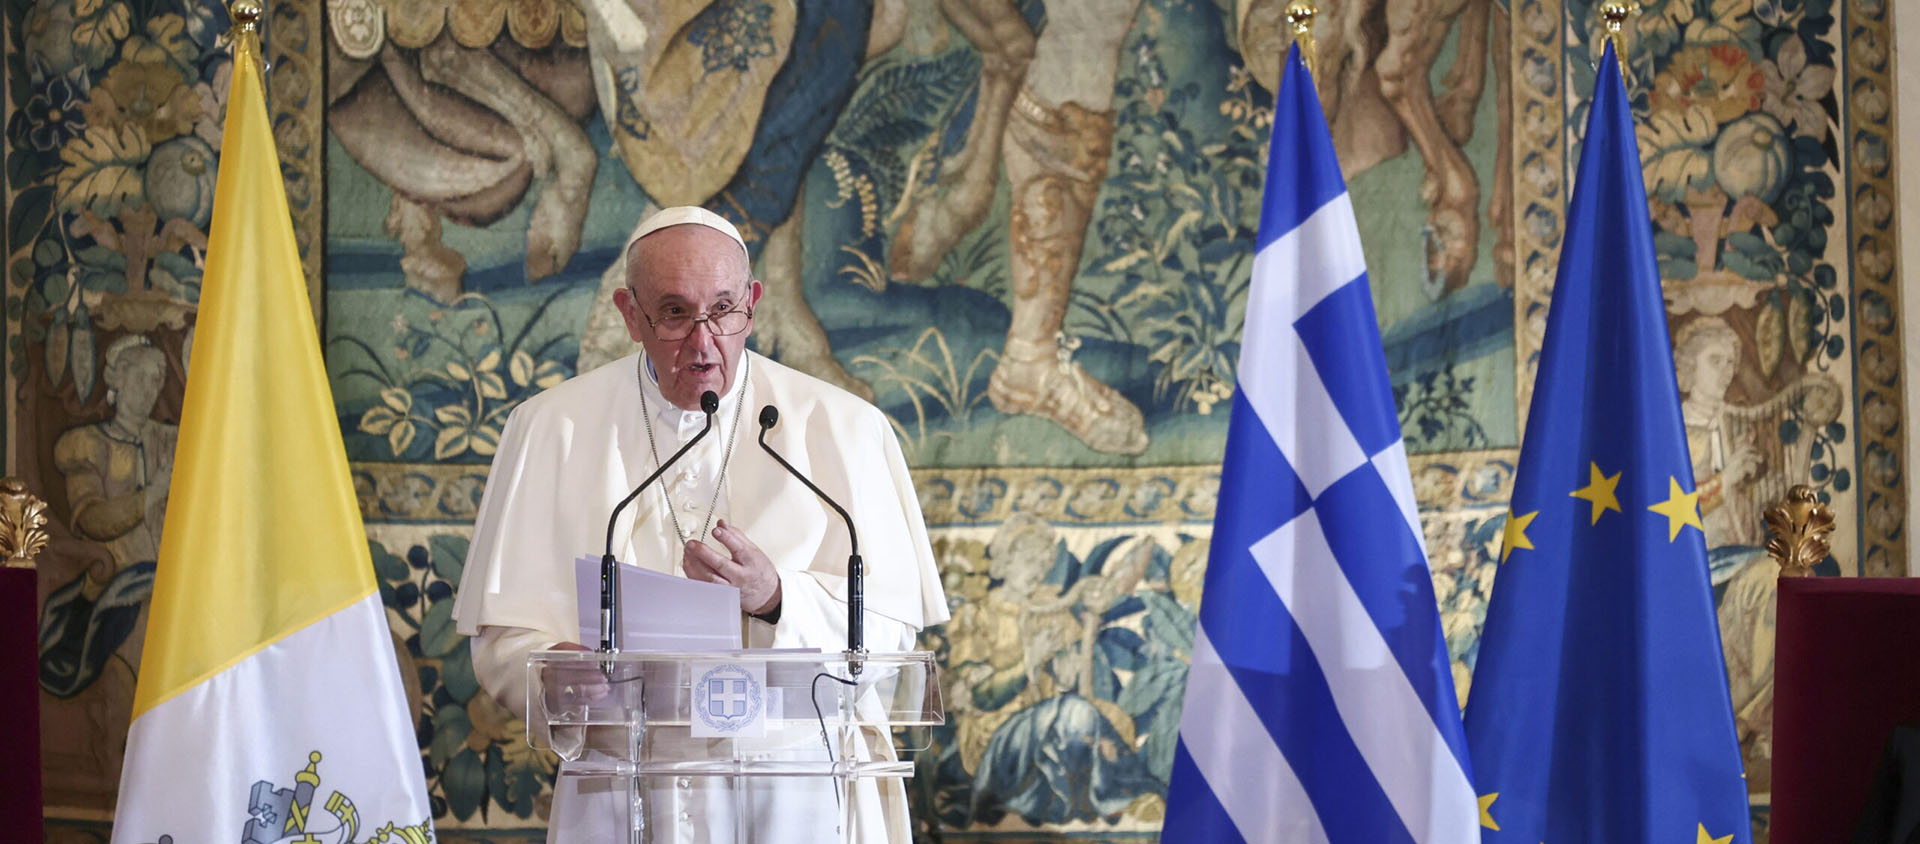 Le pape François donne un discours aux autorités à Athènes, le 4 décembre 2021 | © Keystone/EPA/Y. KARAHALIS / POOL